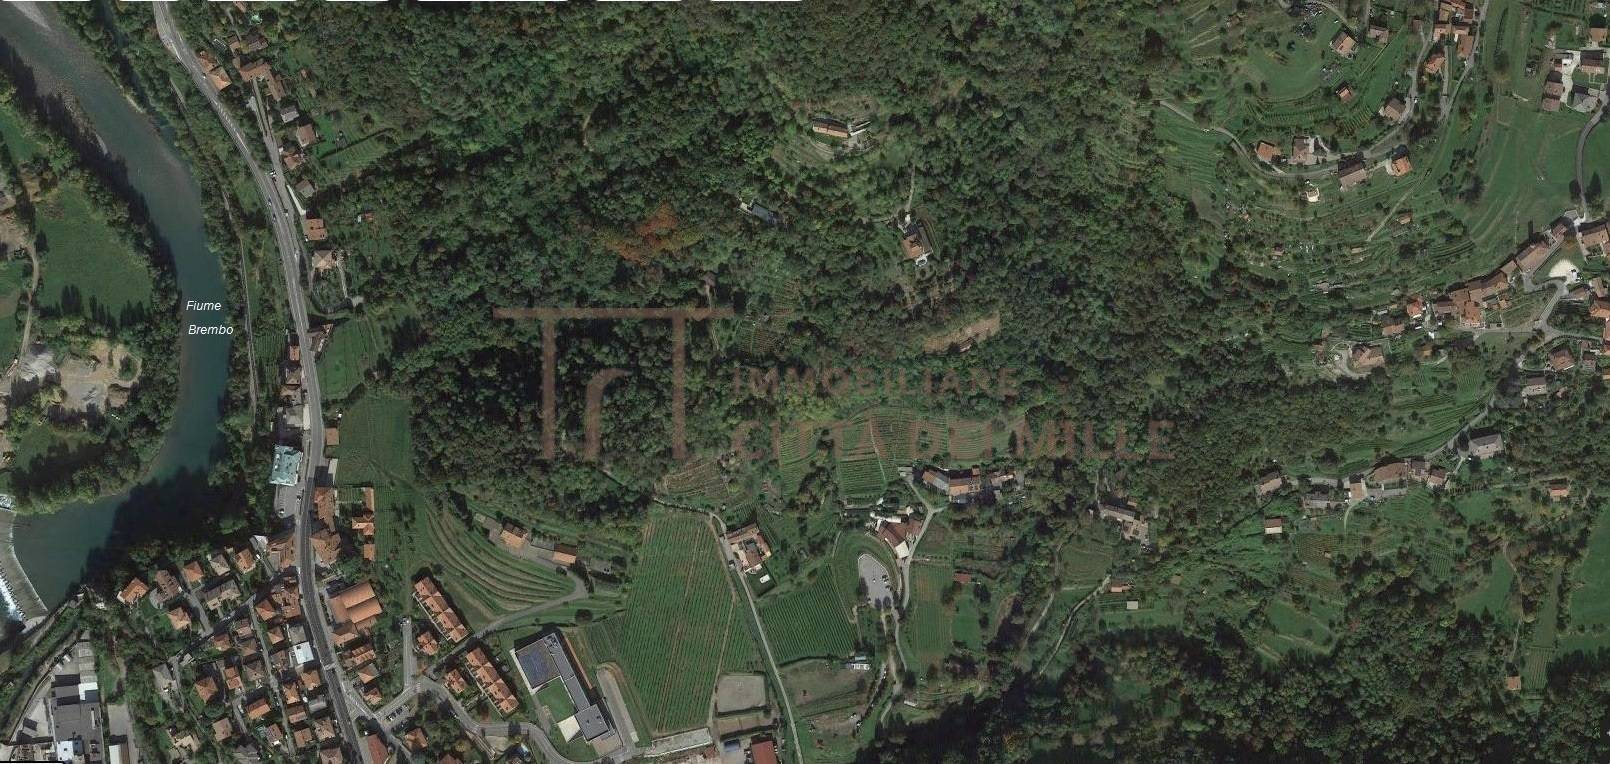 Terreno Edificabile Residenziale in vendita a Villa d'Almè, 9999 locali, prezzo € 450.000 | PortaleAgenzieImmobiliari.it